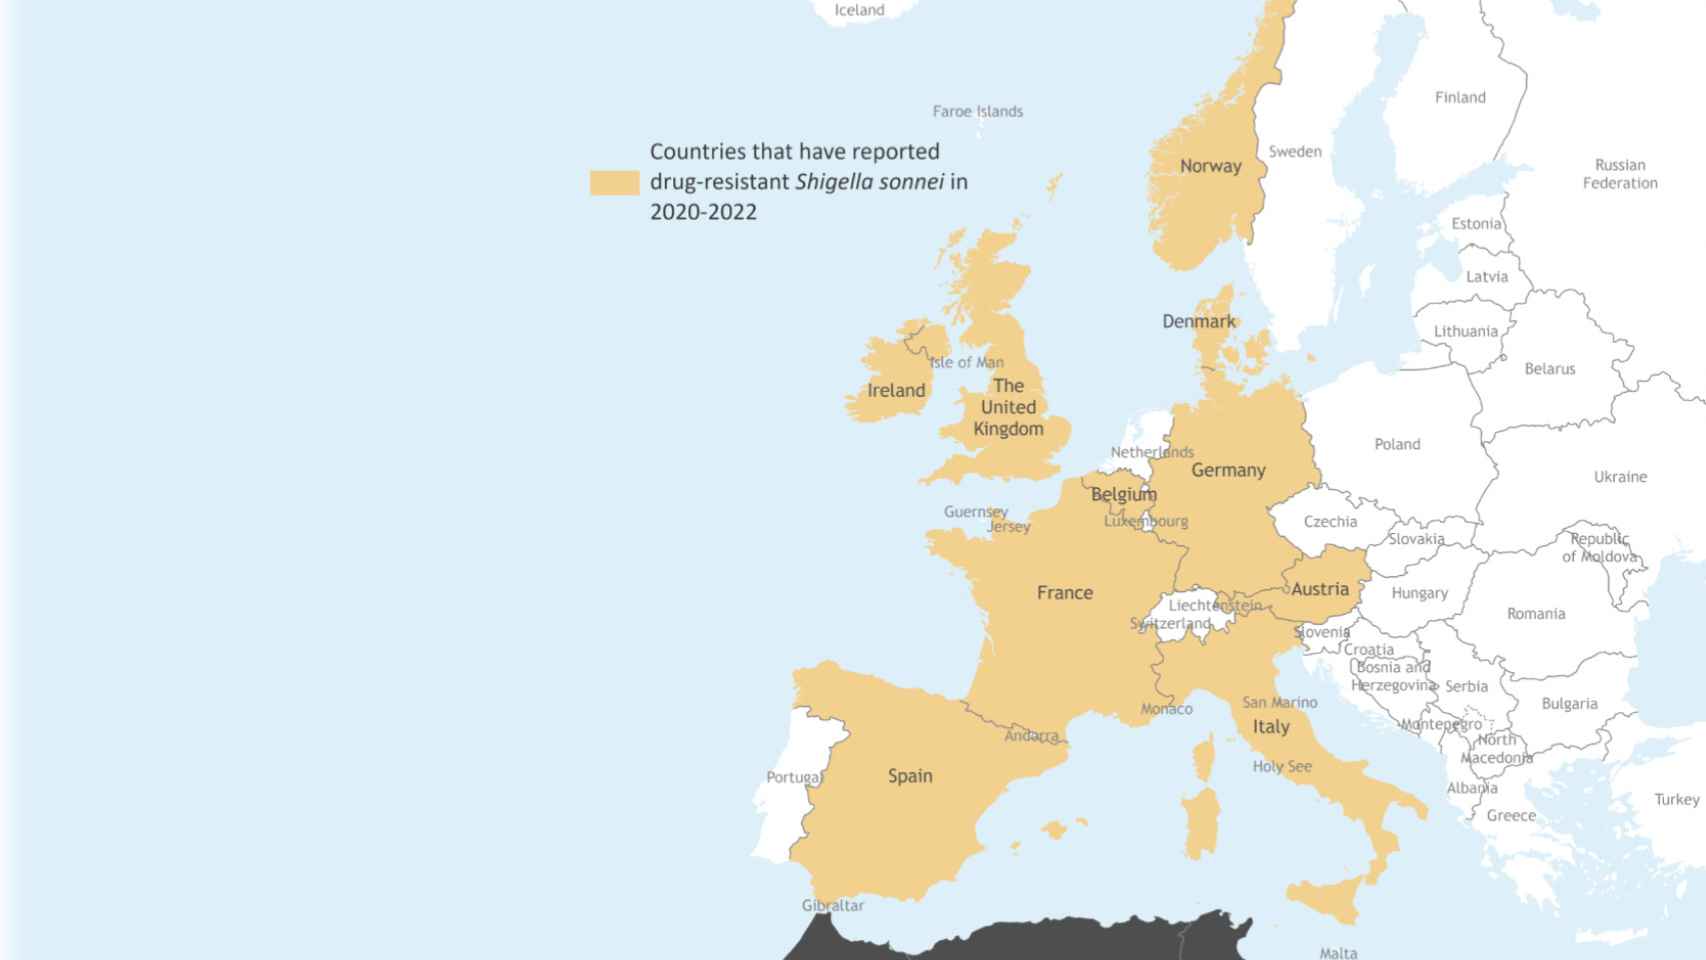 Países en la región de Europa de la OMS que han notificado infecciones por 'Shigella sonnei' altamente resistente.